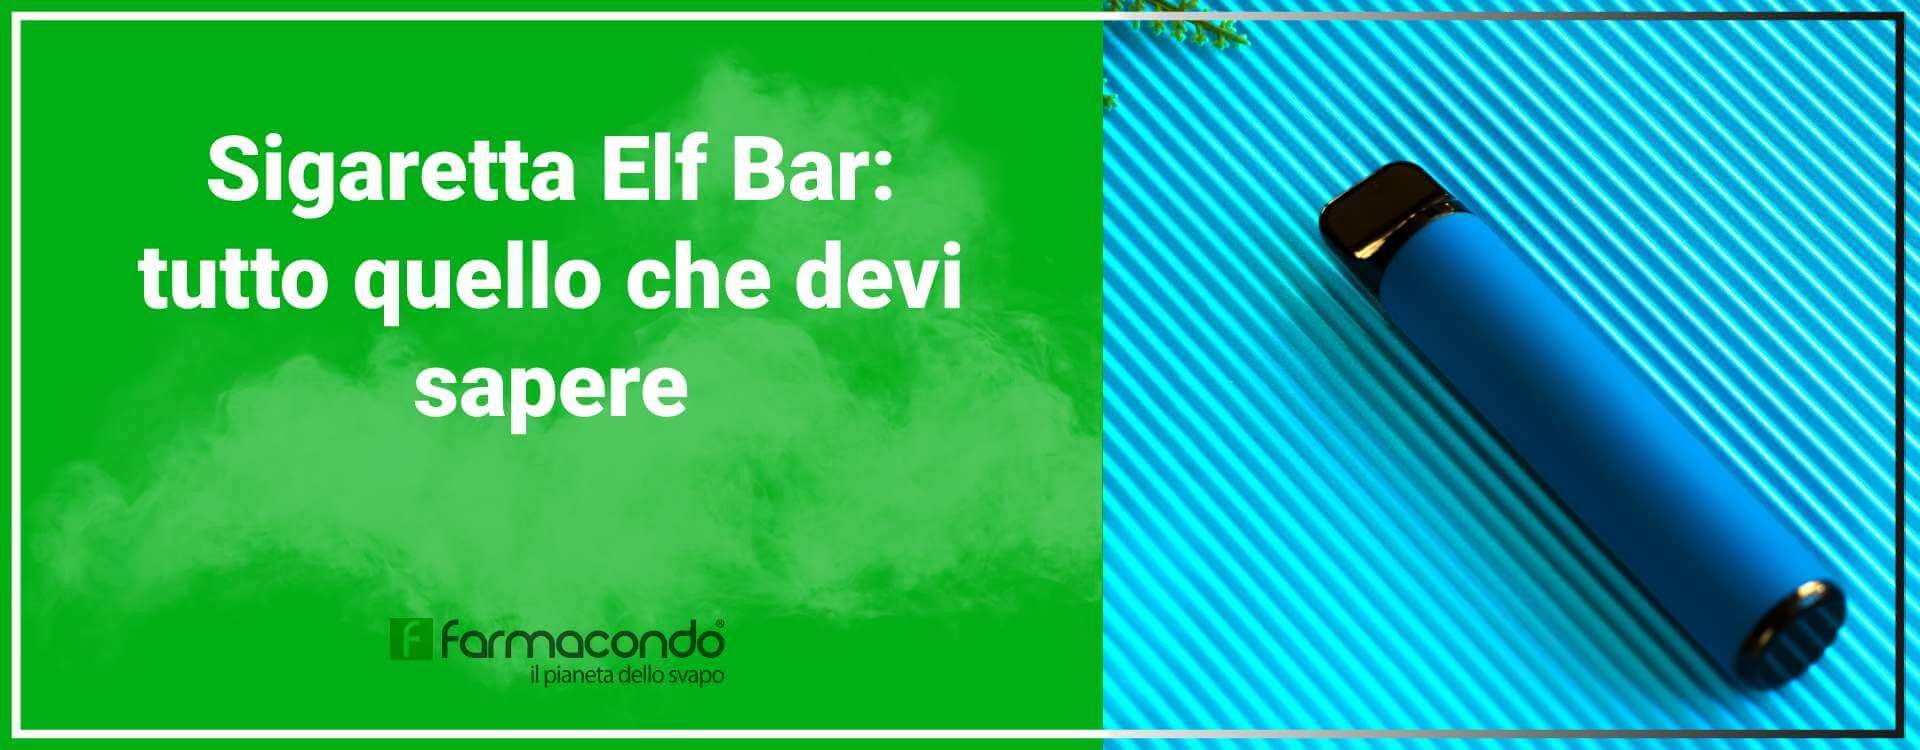 Elf bar sigaretta usa e getta: come si fuma e quali gusti contiene